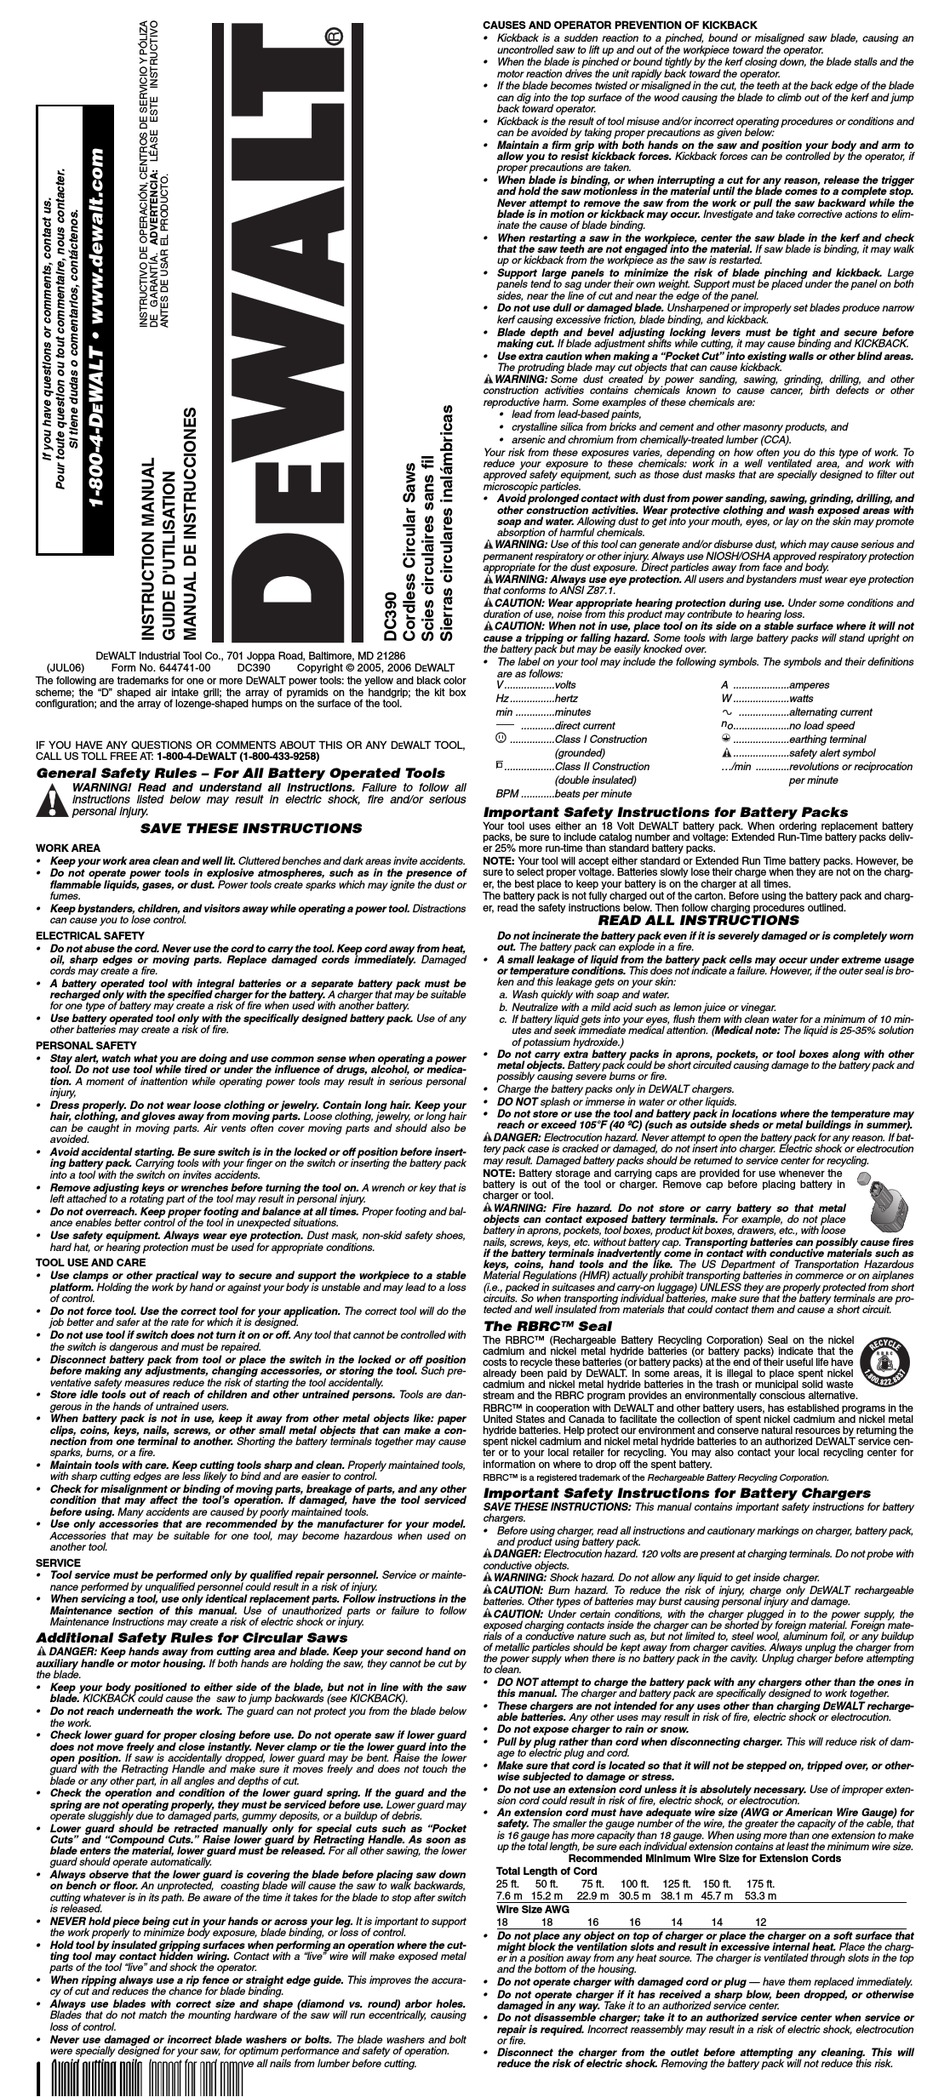 faktum galning Smuk DEWALT DC390 INSTRUCTION MANUAL Pdf Download | ManualsLib